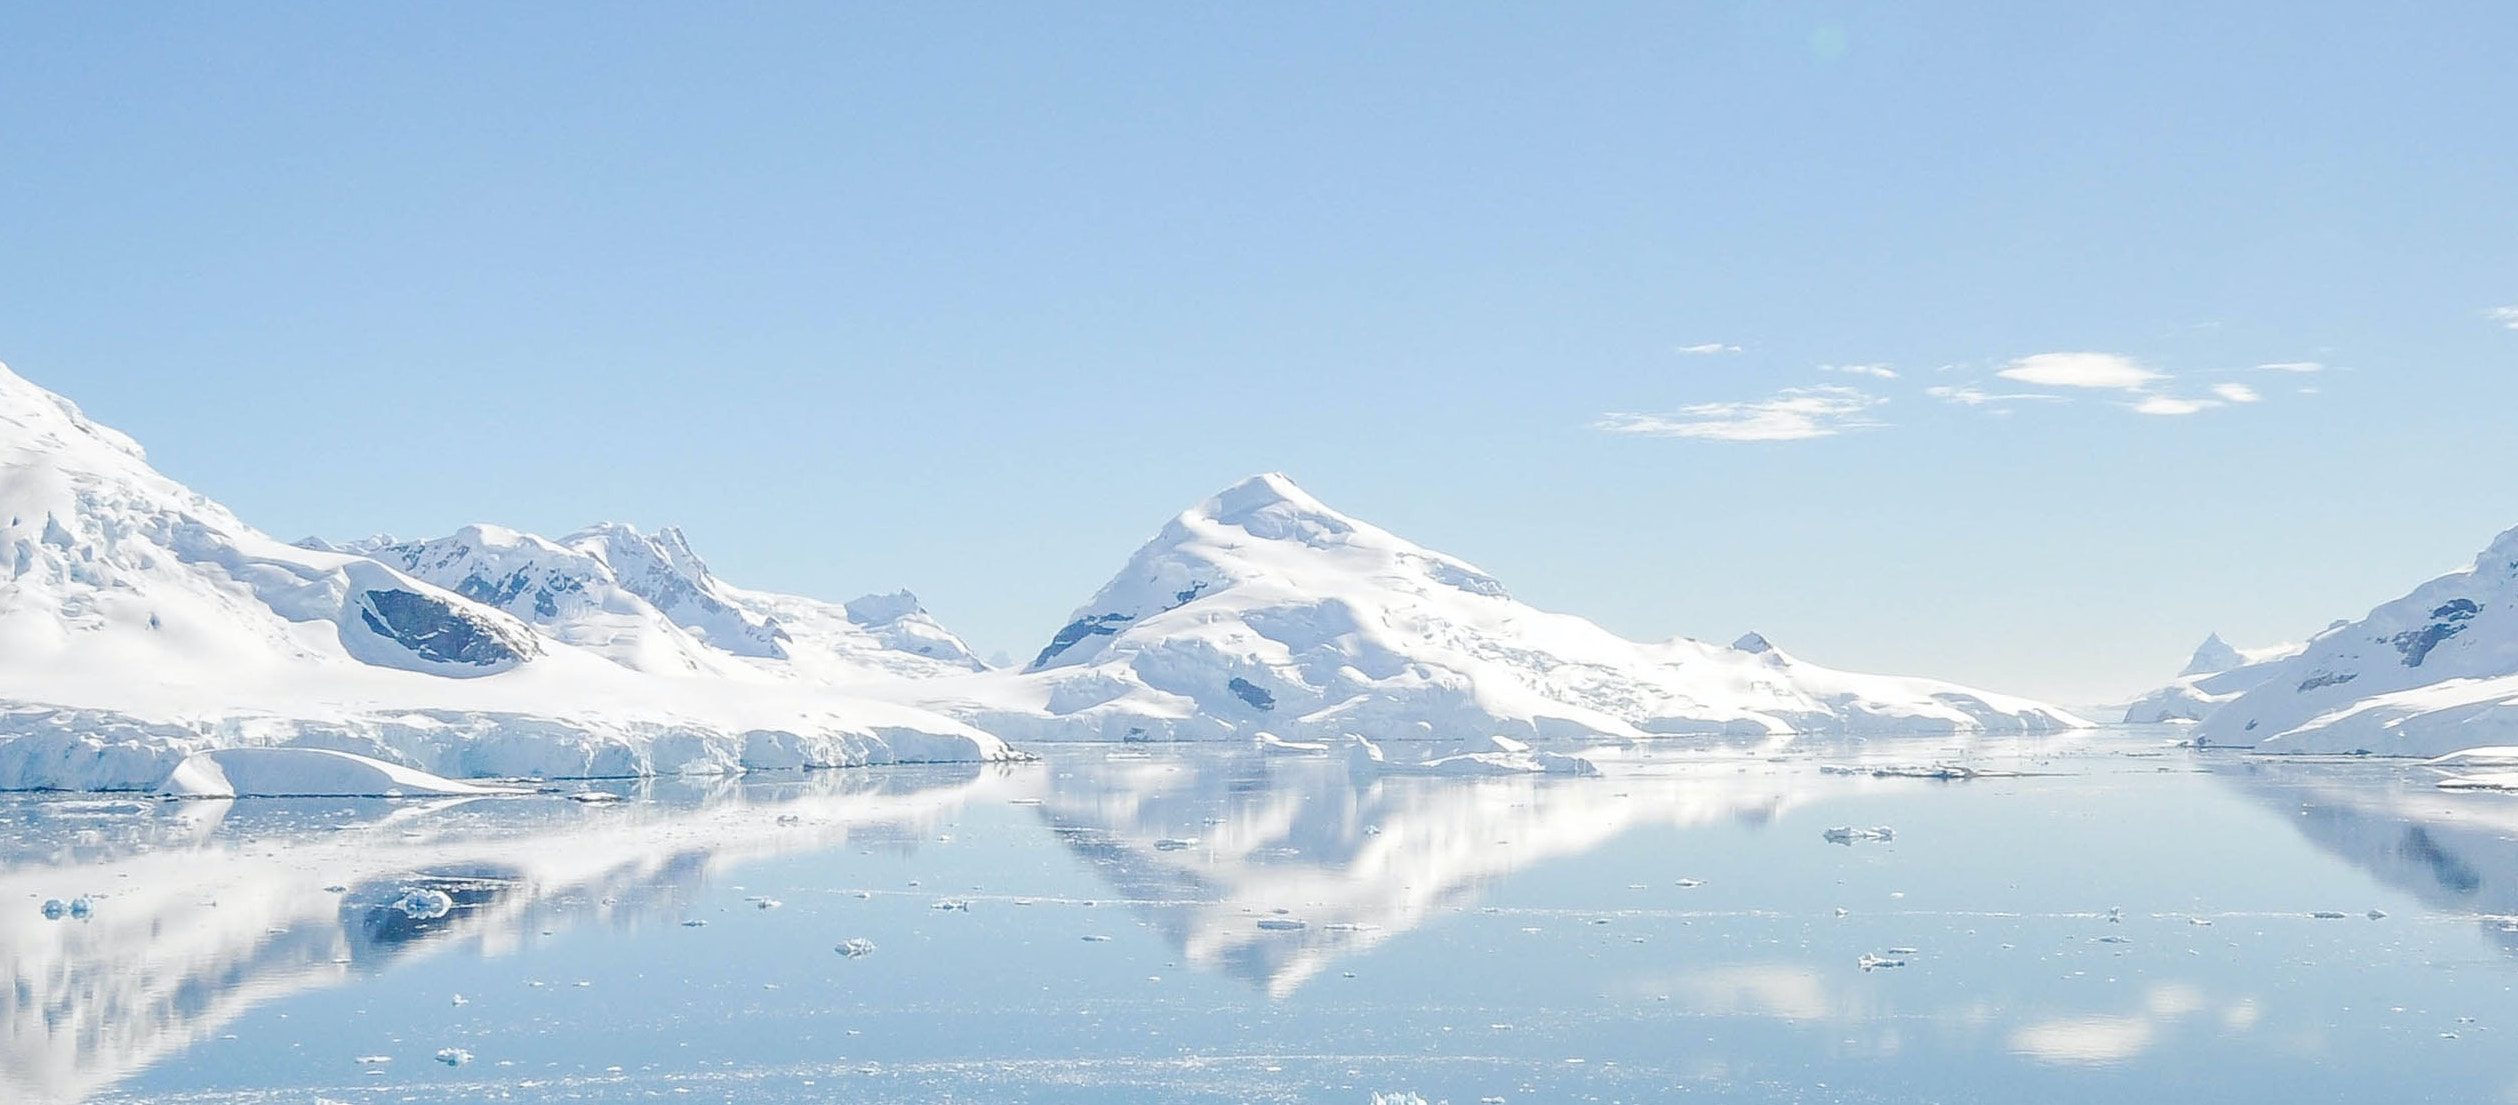 Perché i ghiacciai sono così importanti per l’equilibrio climatico del pianeta